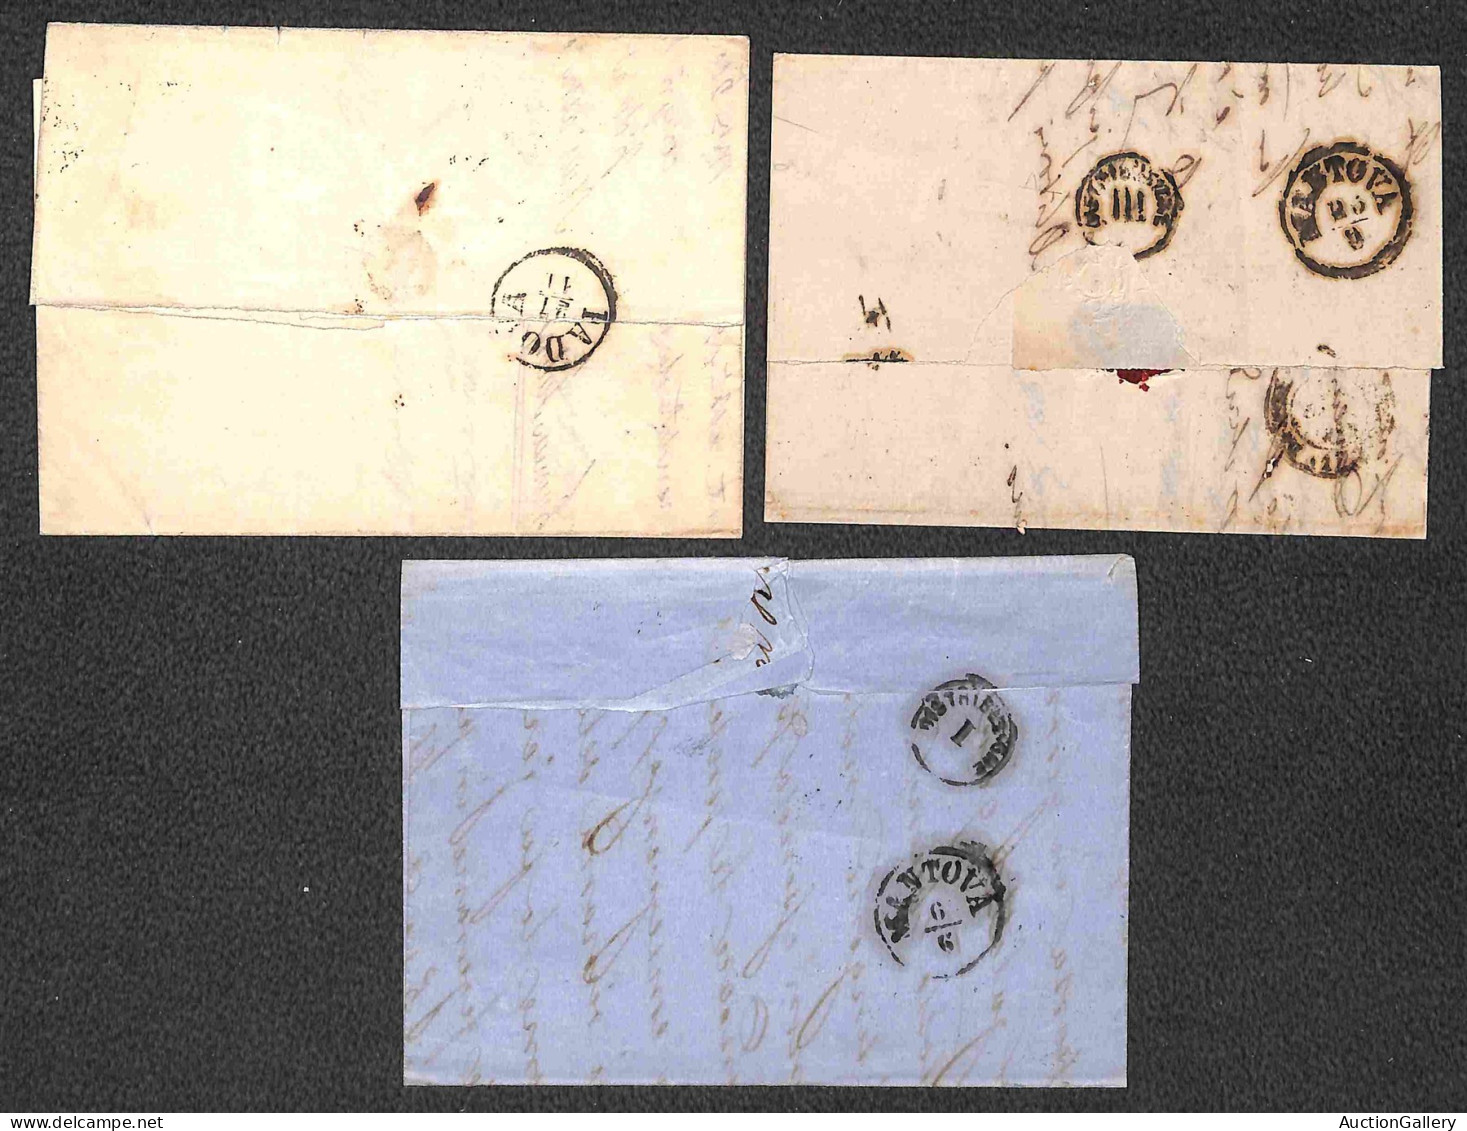 Antichi Stati Italiani - Sardegna - 1860/1862 - Tassate - Nove lettere col 20 cent (15C/15D) per Veneto e Austria - dife